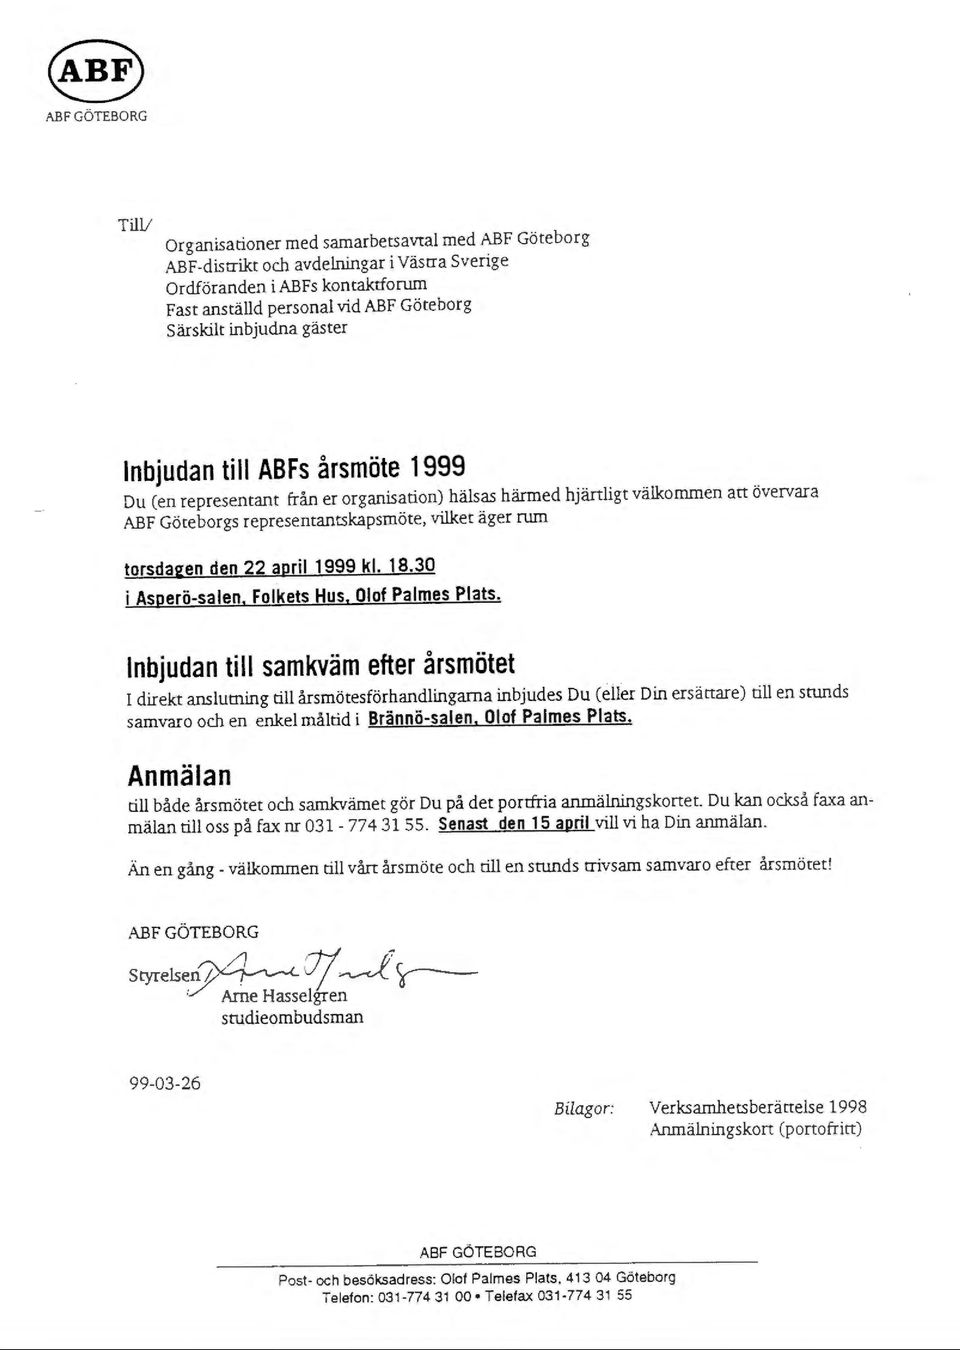 Göteborgs represemanrskapsmöte, vilket äger rum torsdagen den 22 april 1999 kl. 18.30 i Asperö-salen. Folkets Hus. Olof Palmes Plats.